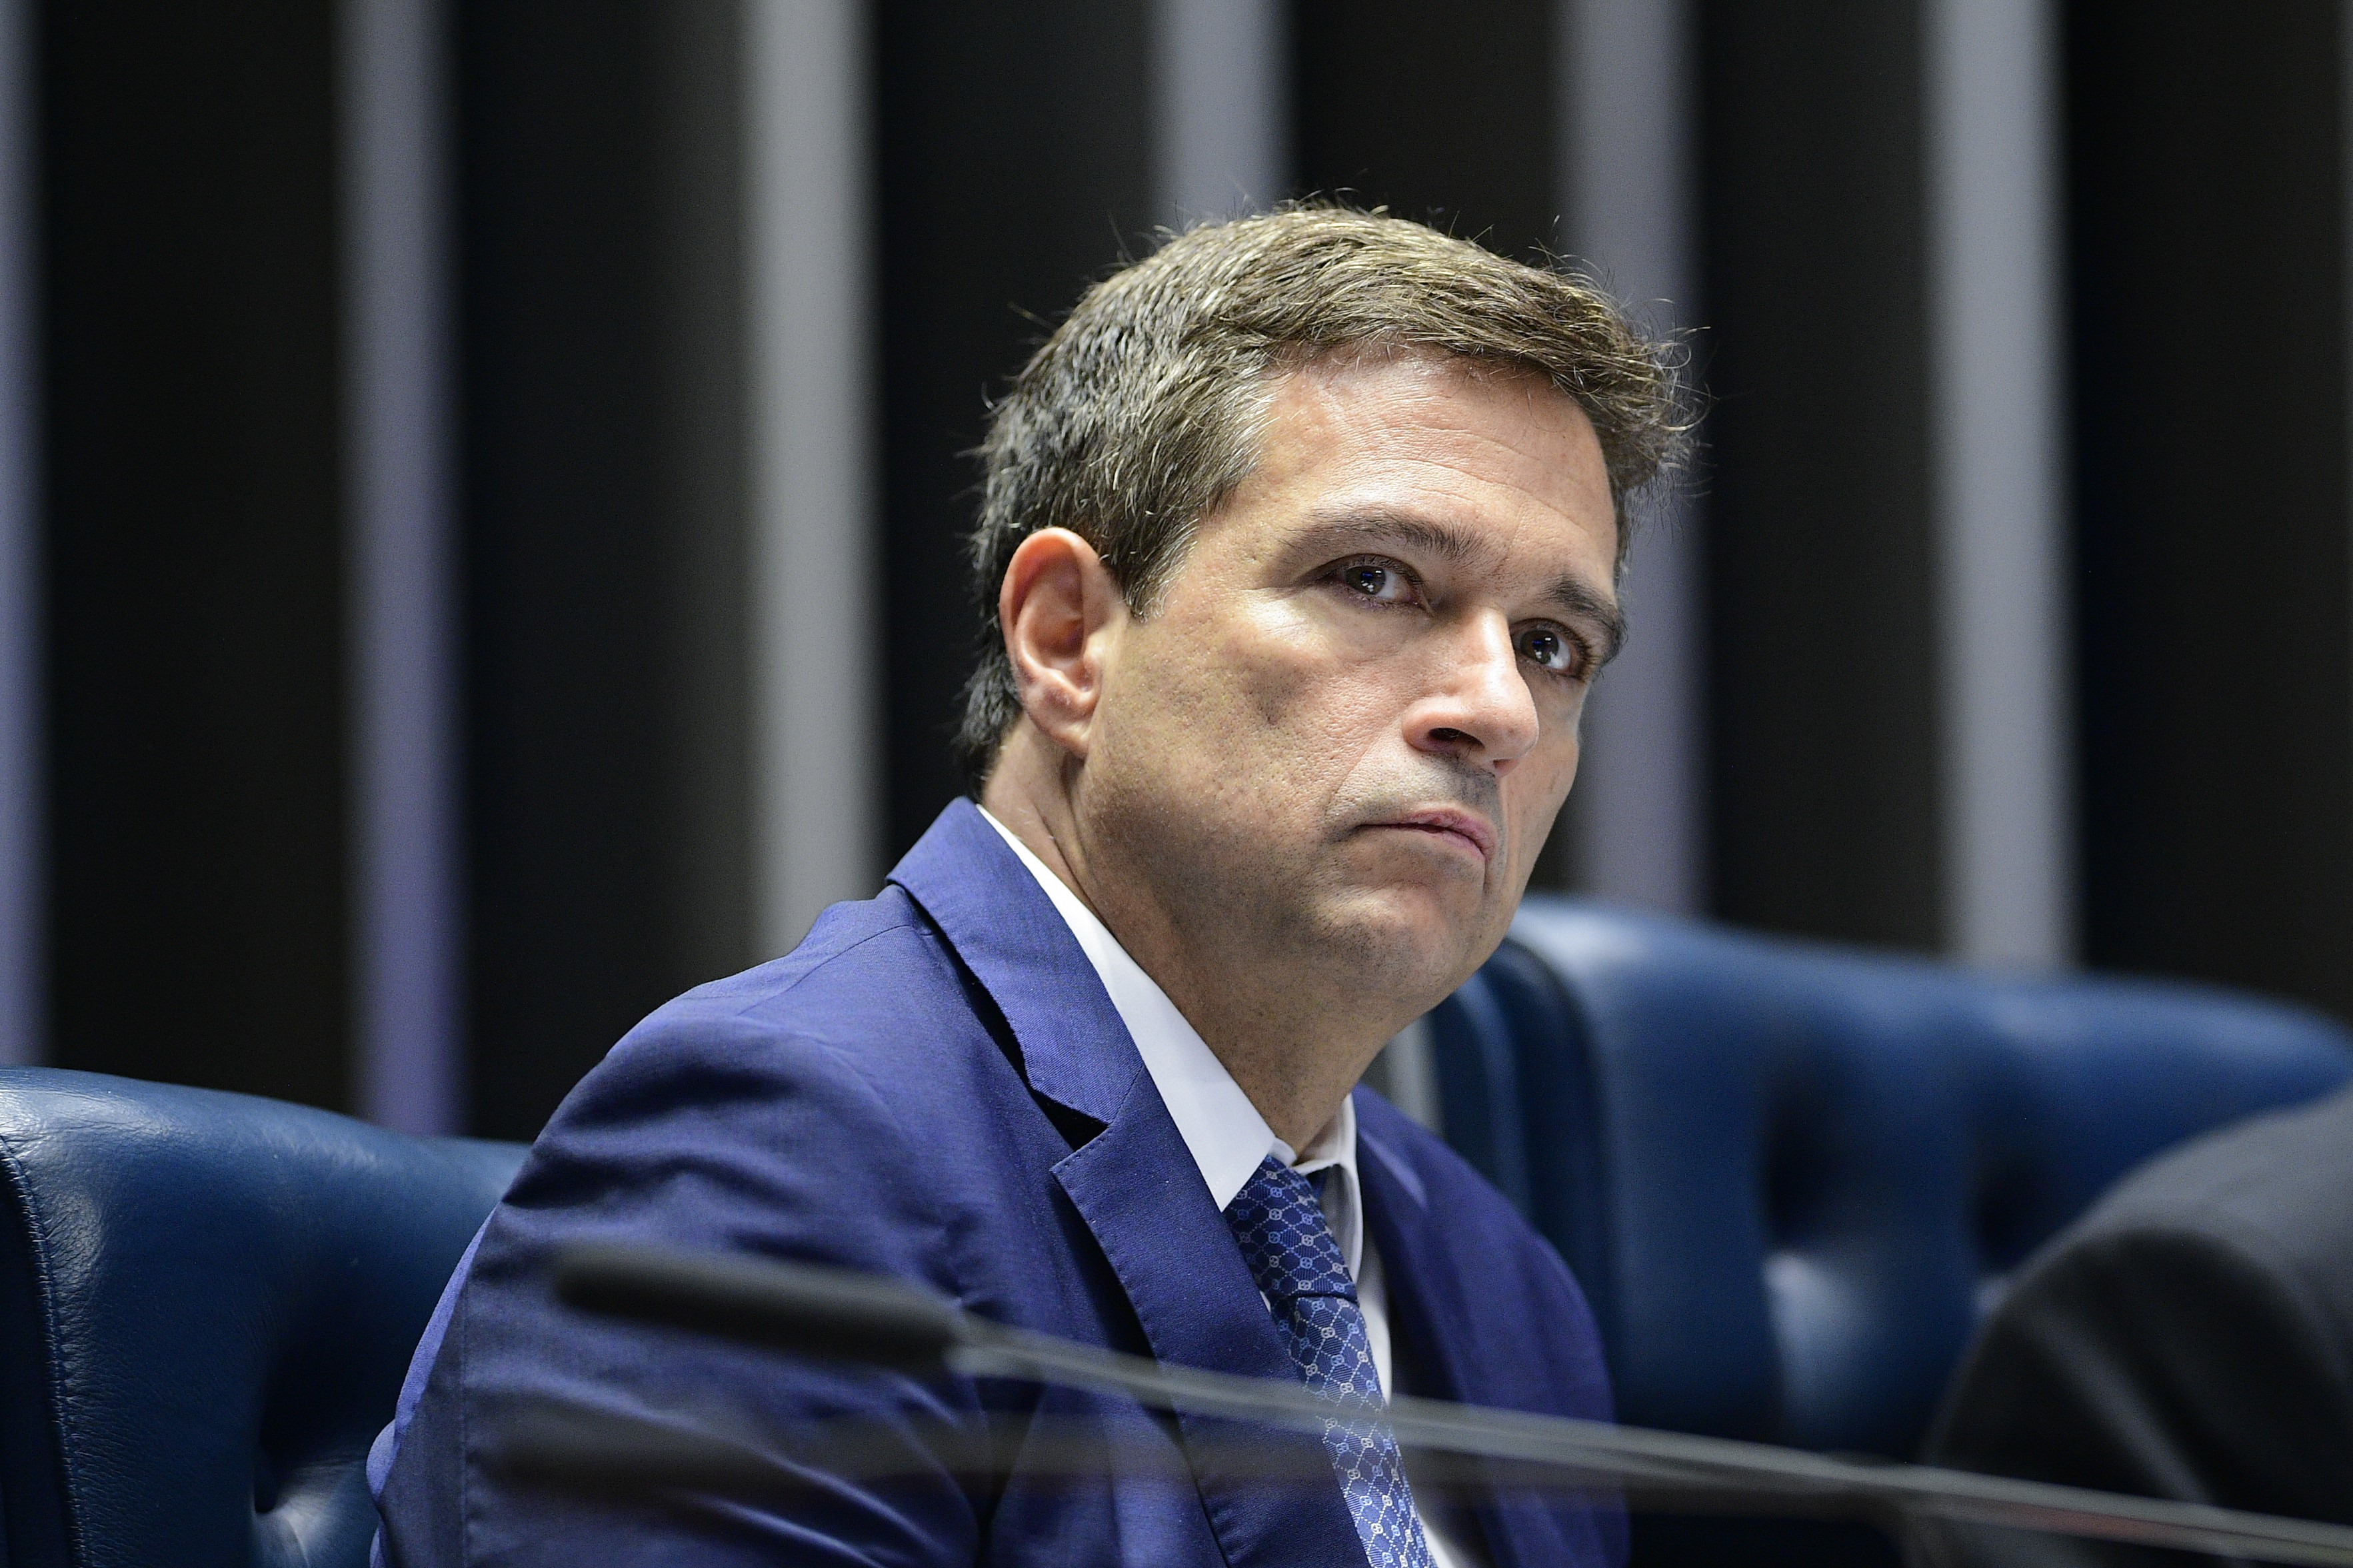 Trabalho do Banco Central ficou ‘mais difícil’ após mudanças de metas fiscais pelo governo, diz Campos Neto